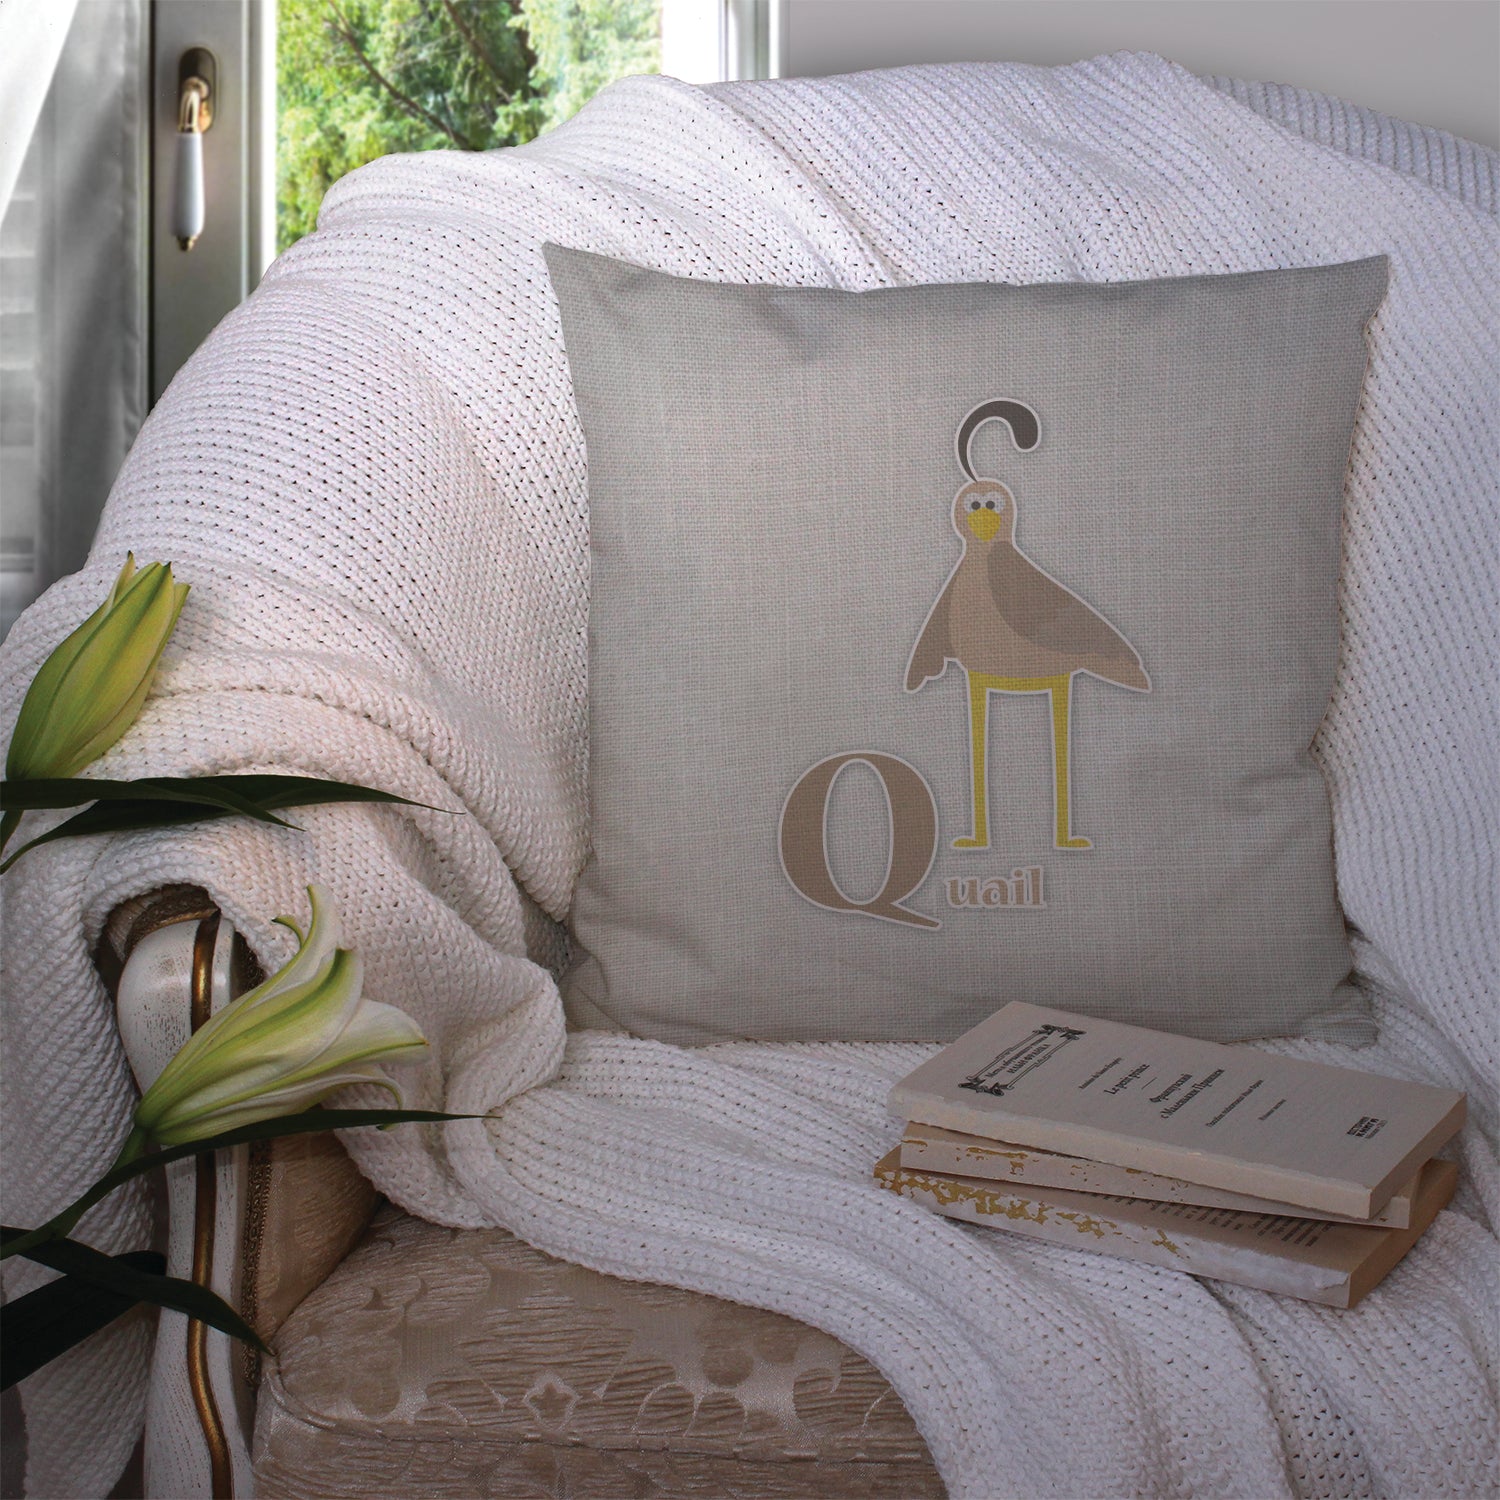 Alphabet Q for Quail Fabric Decorative Pillow BB5742PW1414 - the-store.com